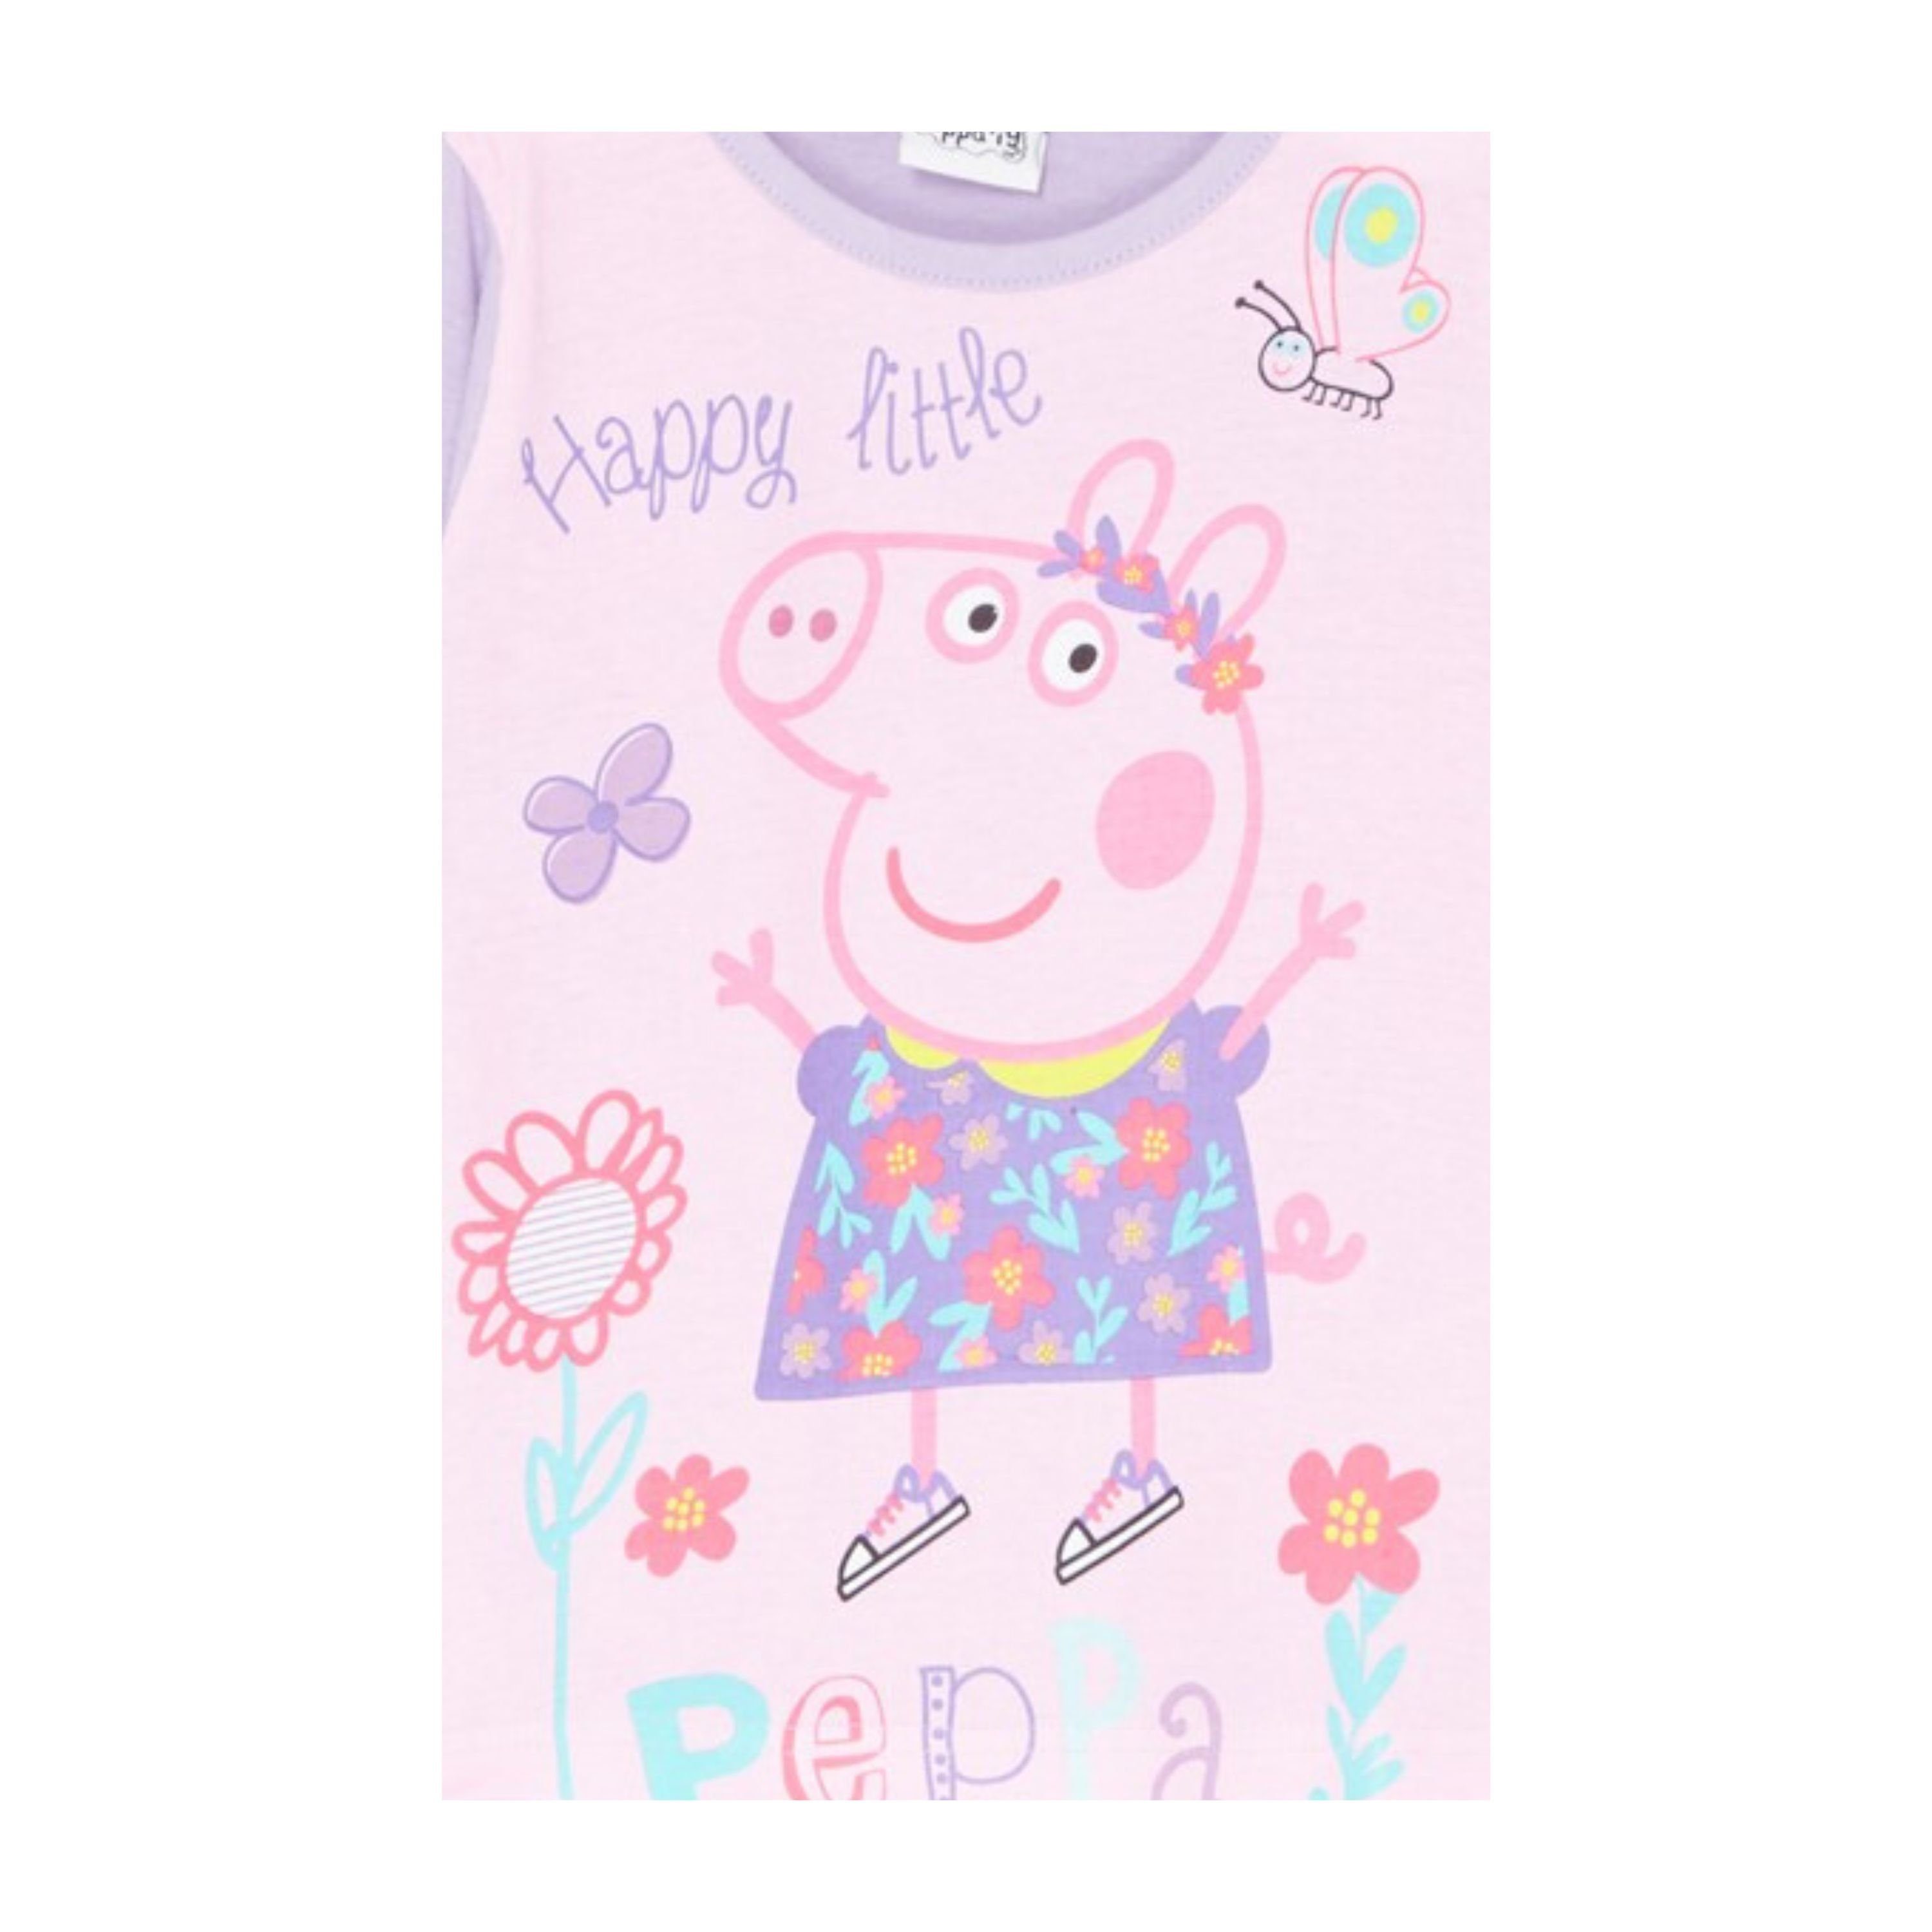 Gr. Mädchen Pig Wutz Shirt Baumwolle aus cm Lila Peppa Langarmshirt 98-116 Peppa